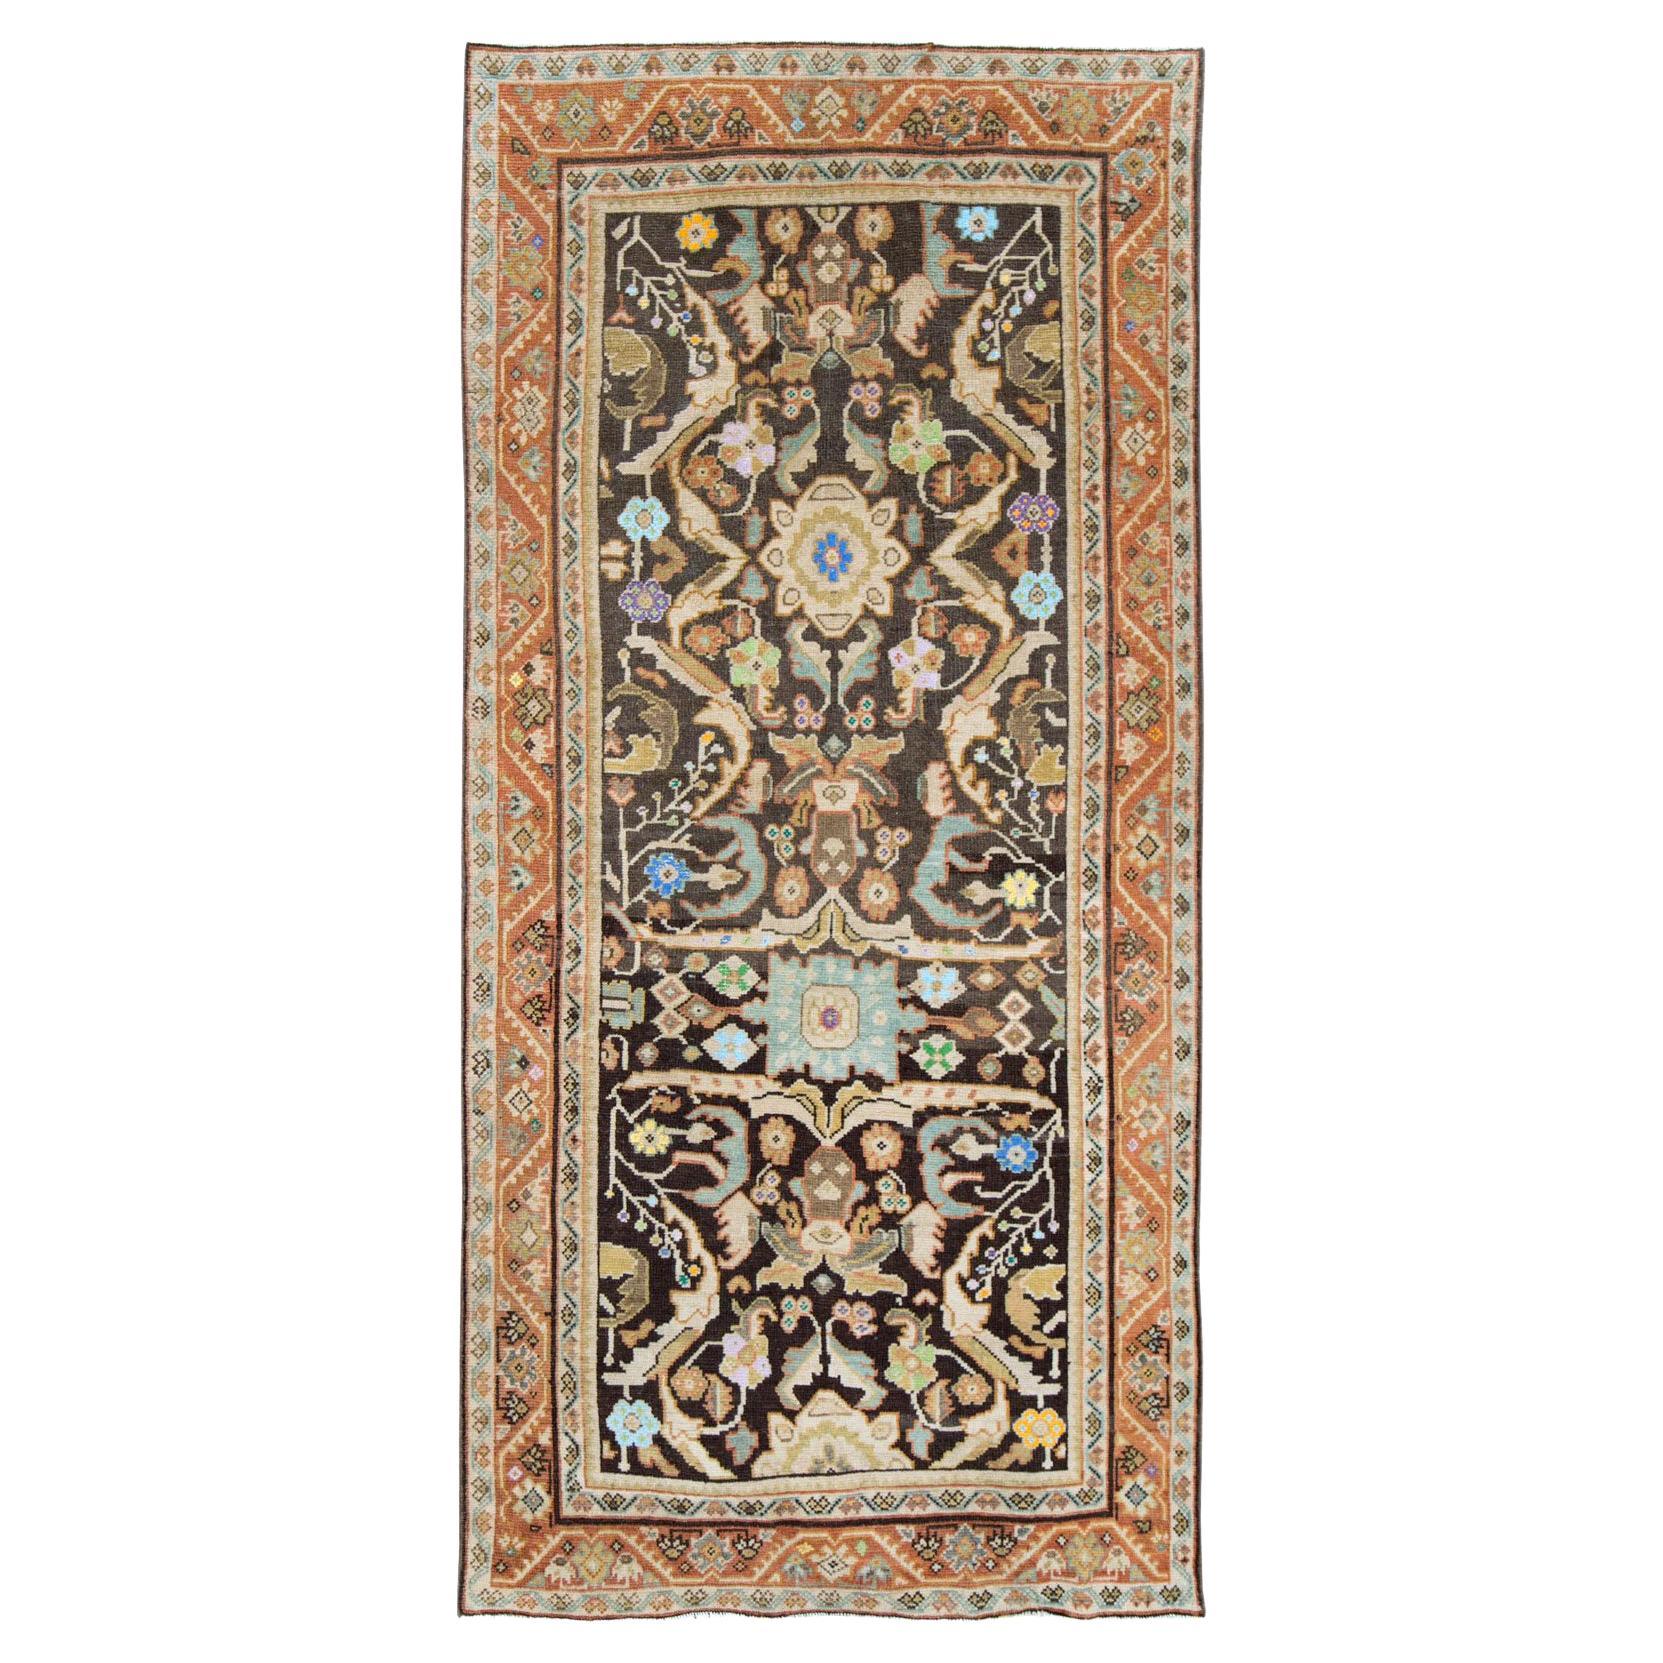 Handgefertigter persischer Mahal-Galerieteppich aus der Mitte des 20. Jahrhunderts